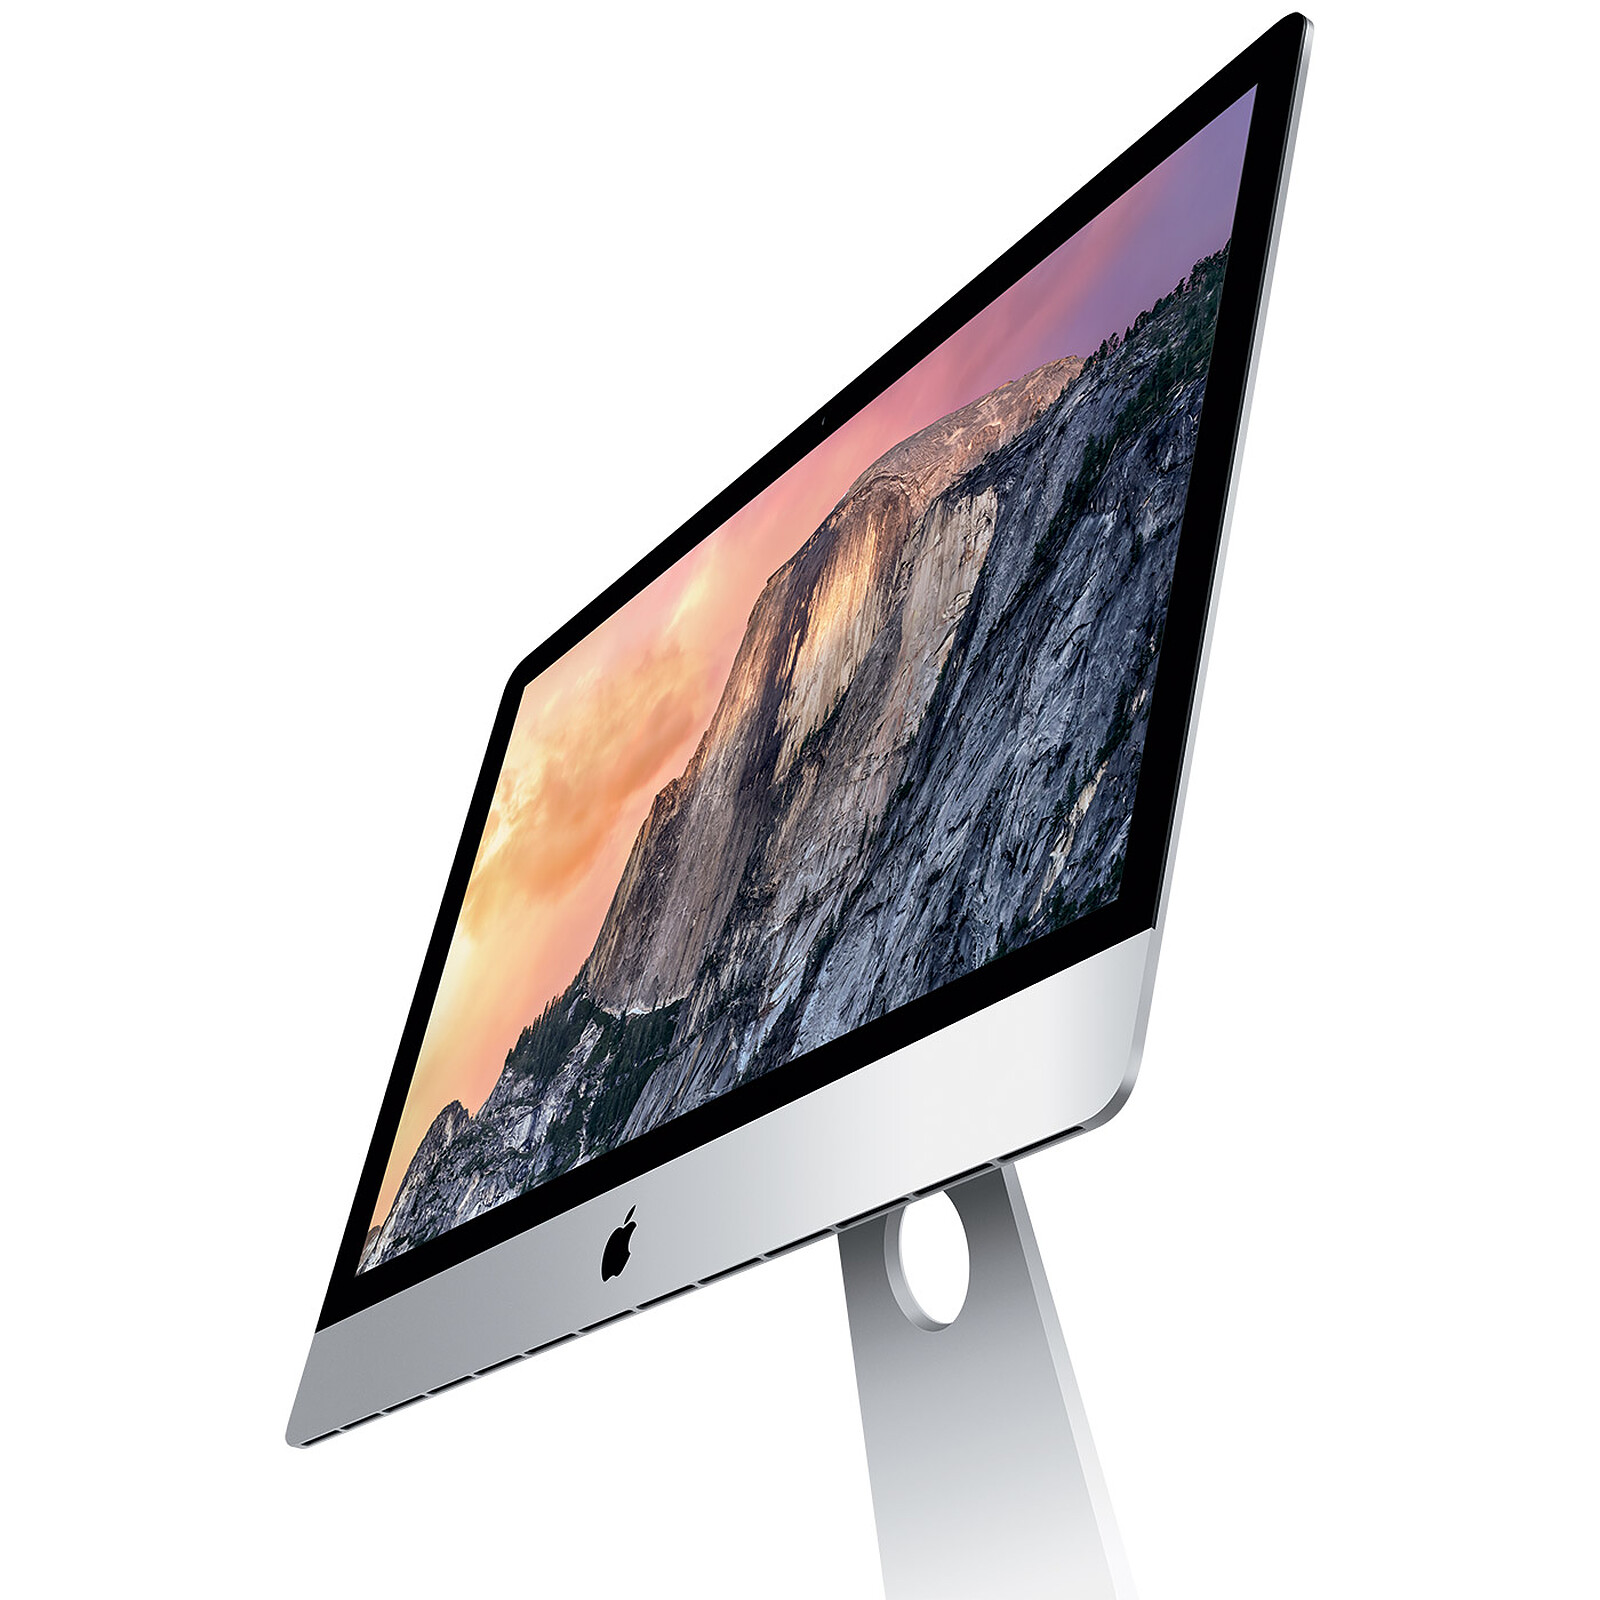 Consomac : Apple dévoile l'iMac avec écran Retina 5K